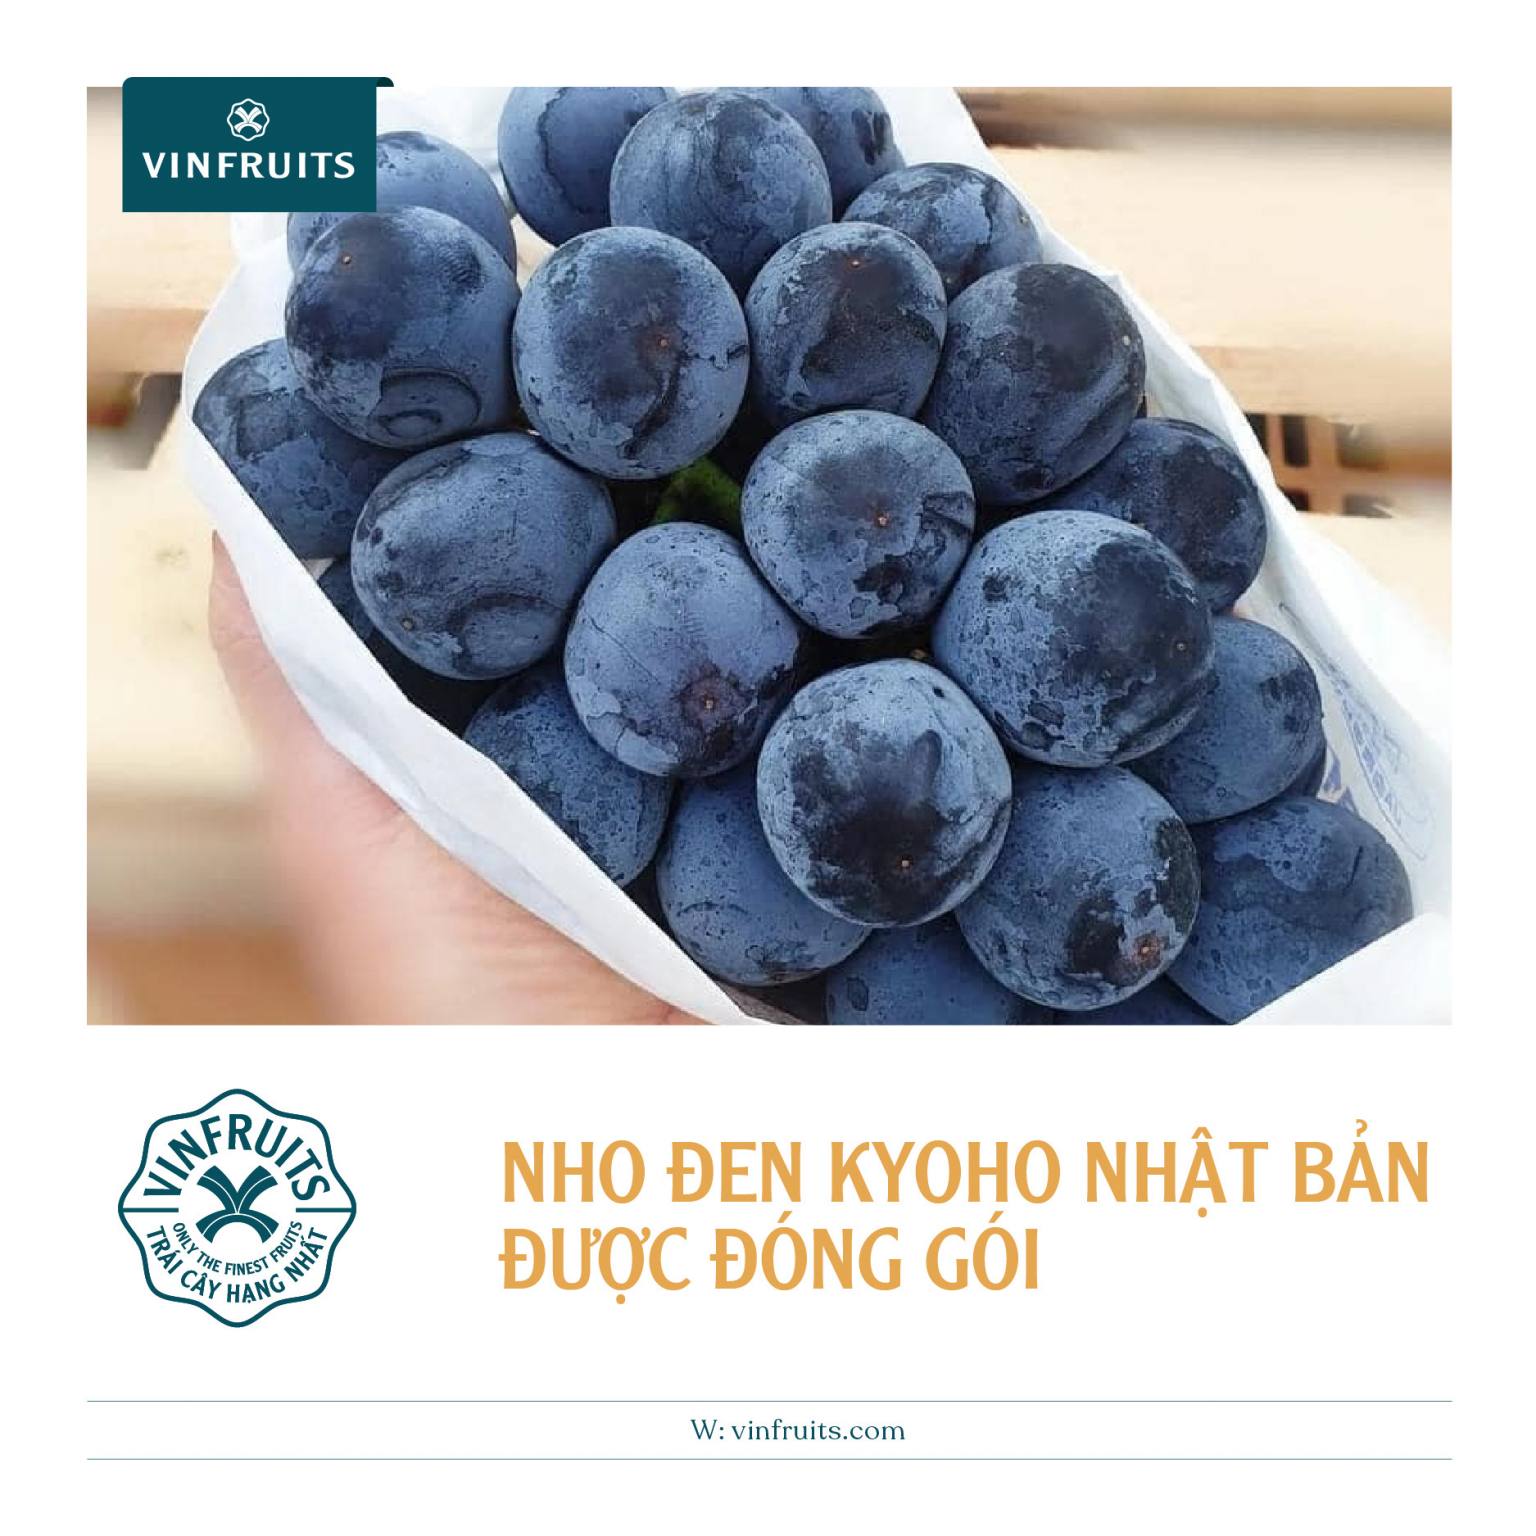 Nho Kyoho organic được đóng gói cực kỳ cẩn thận như các loại trái cây Nhật Bản khác